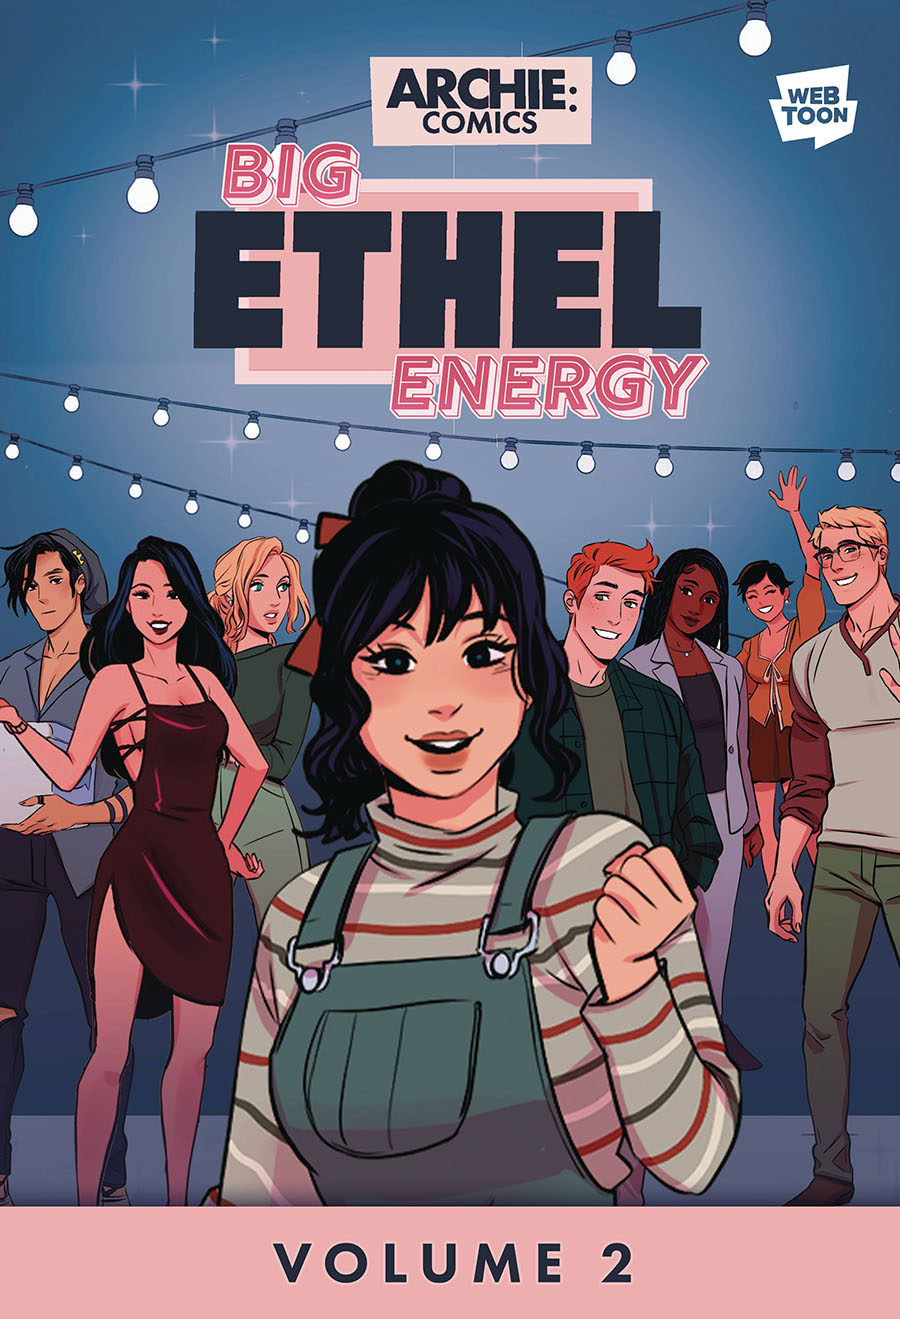 Big Ethel Energy Vol 2 TP